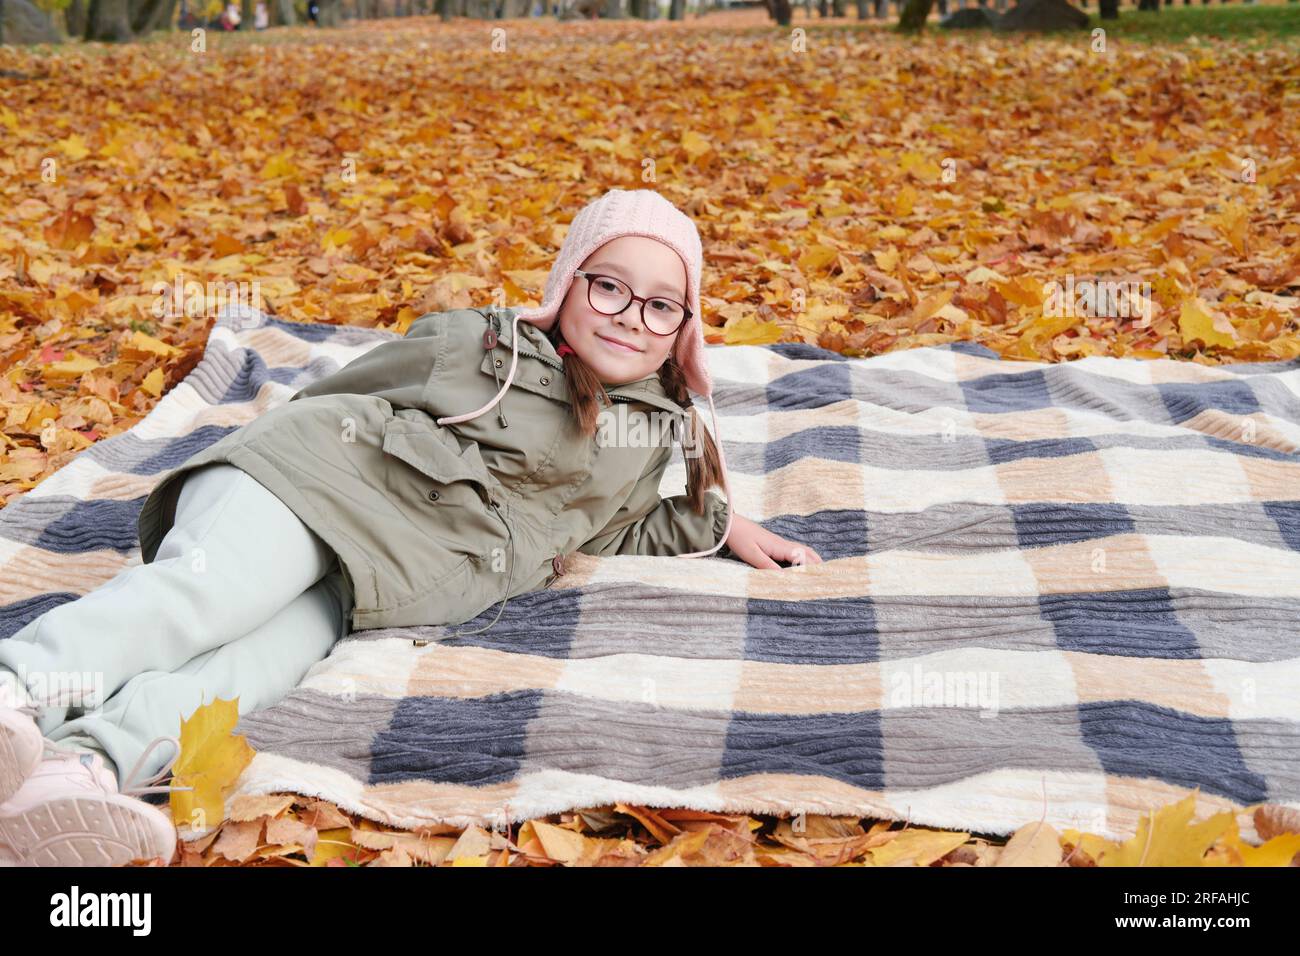 Mädchen in Herbstjacke, rosa Hut und Brille liegen auf einer Decke in einem Herbstpark. Das Mädchen lächelt und schaut in die Kamera. Horizontales Foto Stockfoto